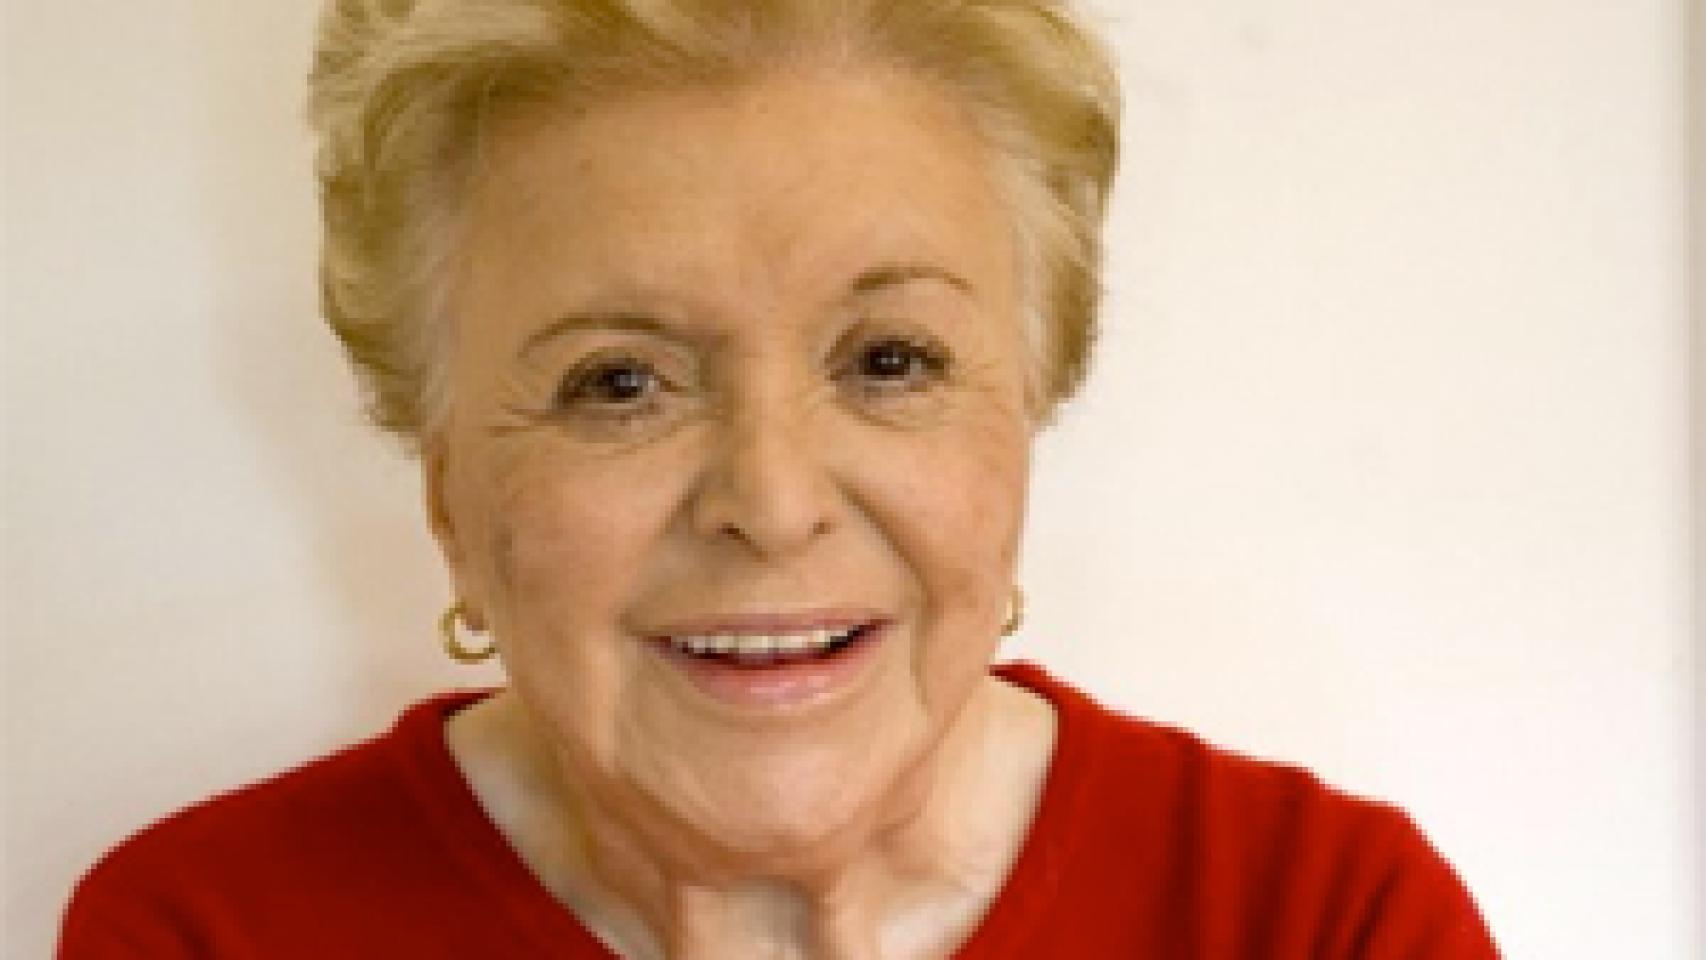 Image: Fallece la actriz Amparo Soler Leal a los 80 años